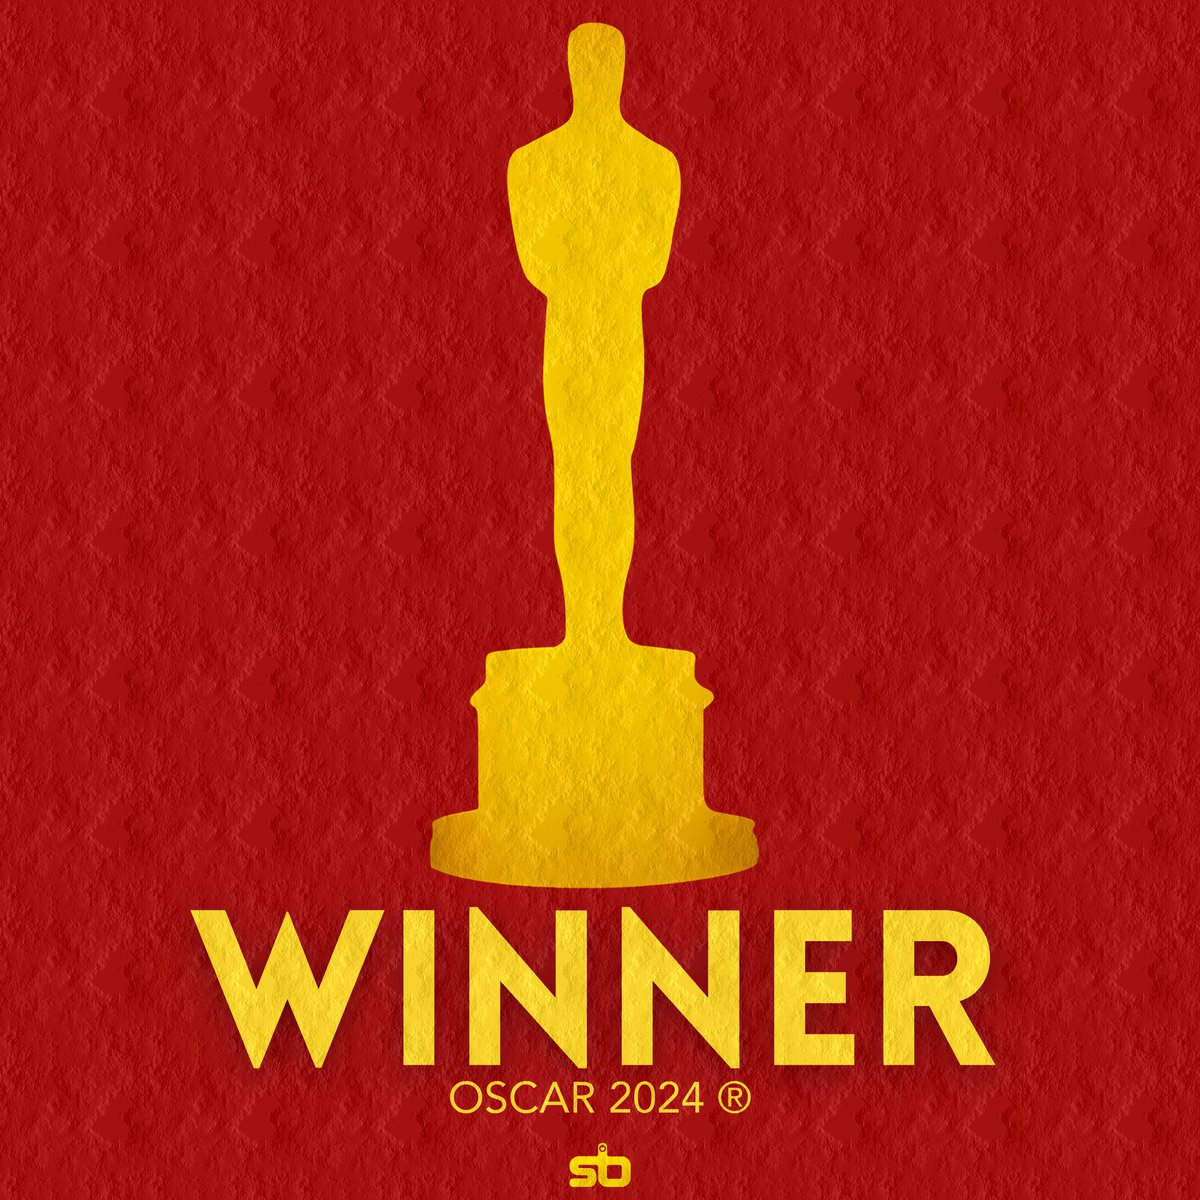 🏆 OPPENHEIMER vence o Oscar de “Melhor Filme”. #Oscars #Oscars2024